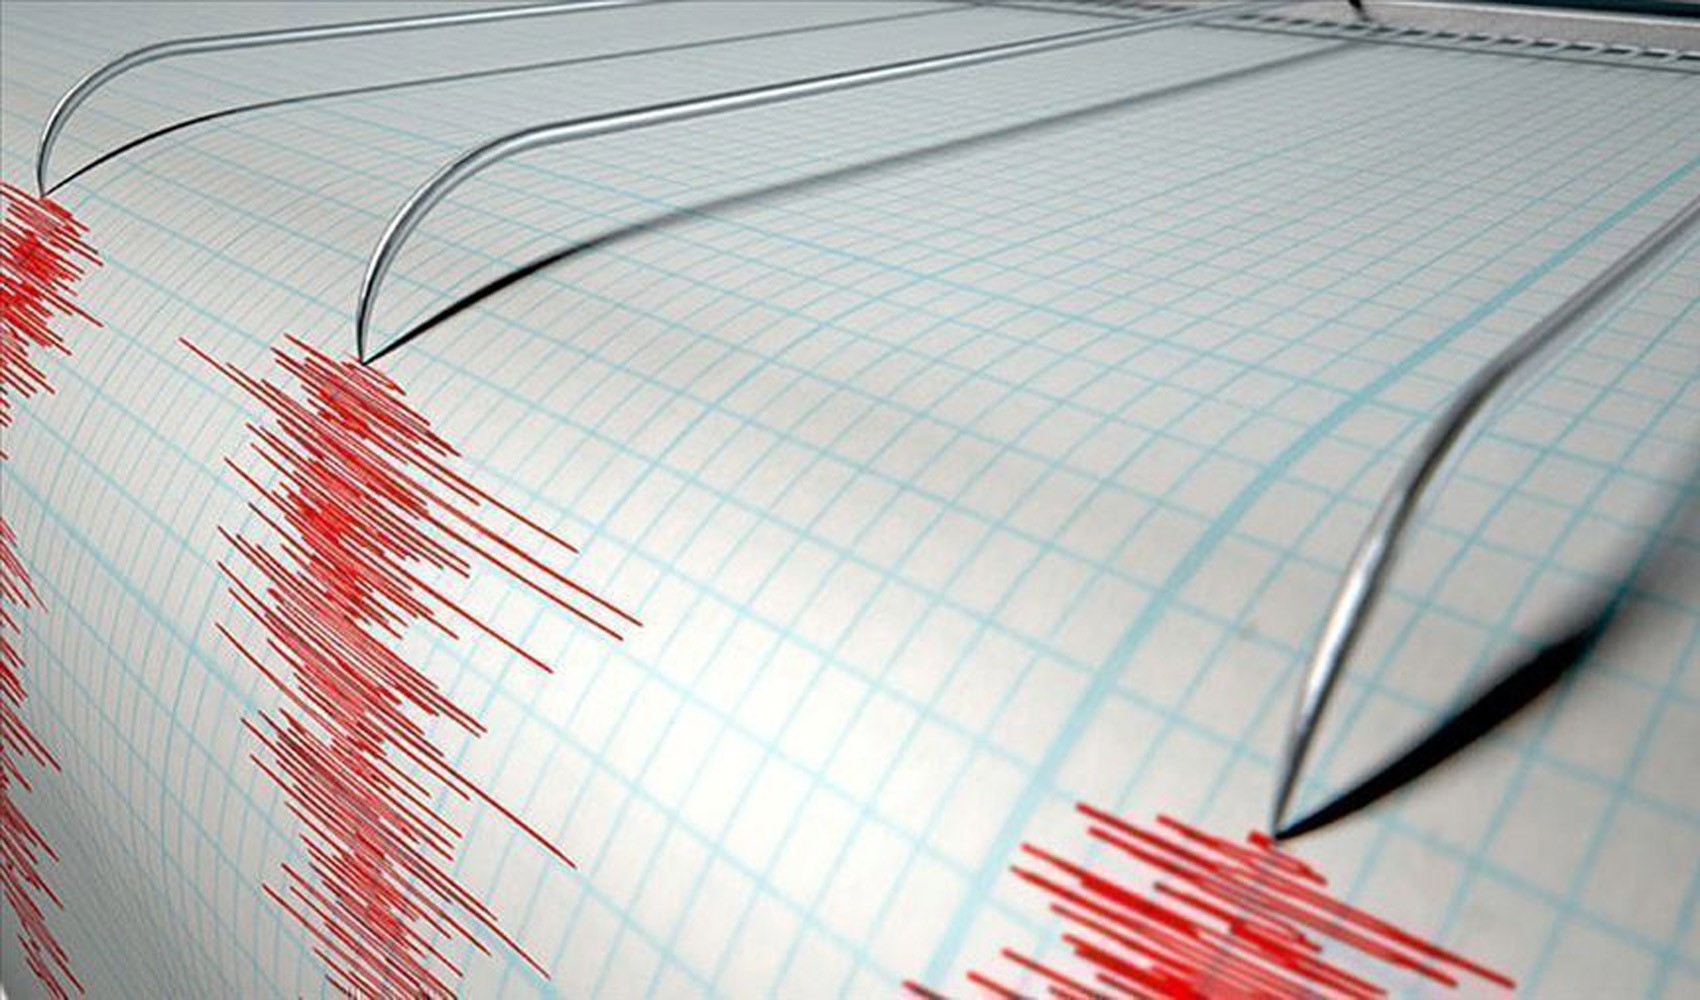 Azerbeycan'da deprem: AFAD duyurdu...